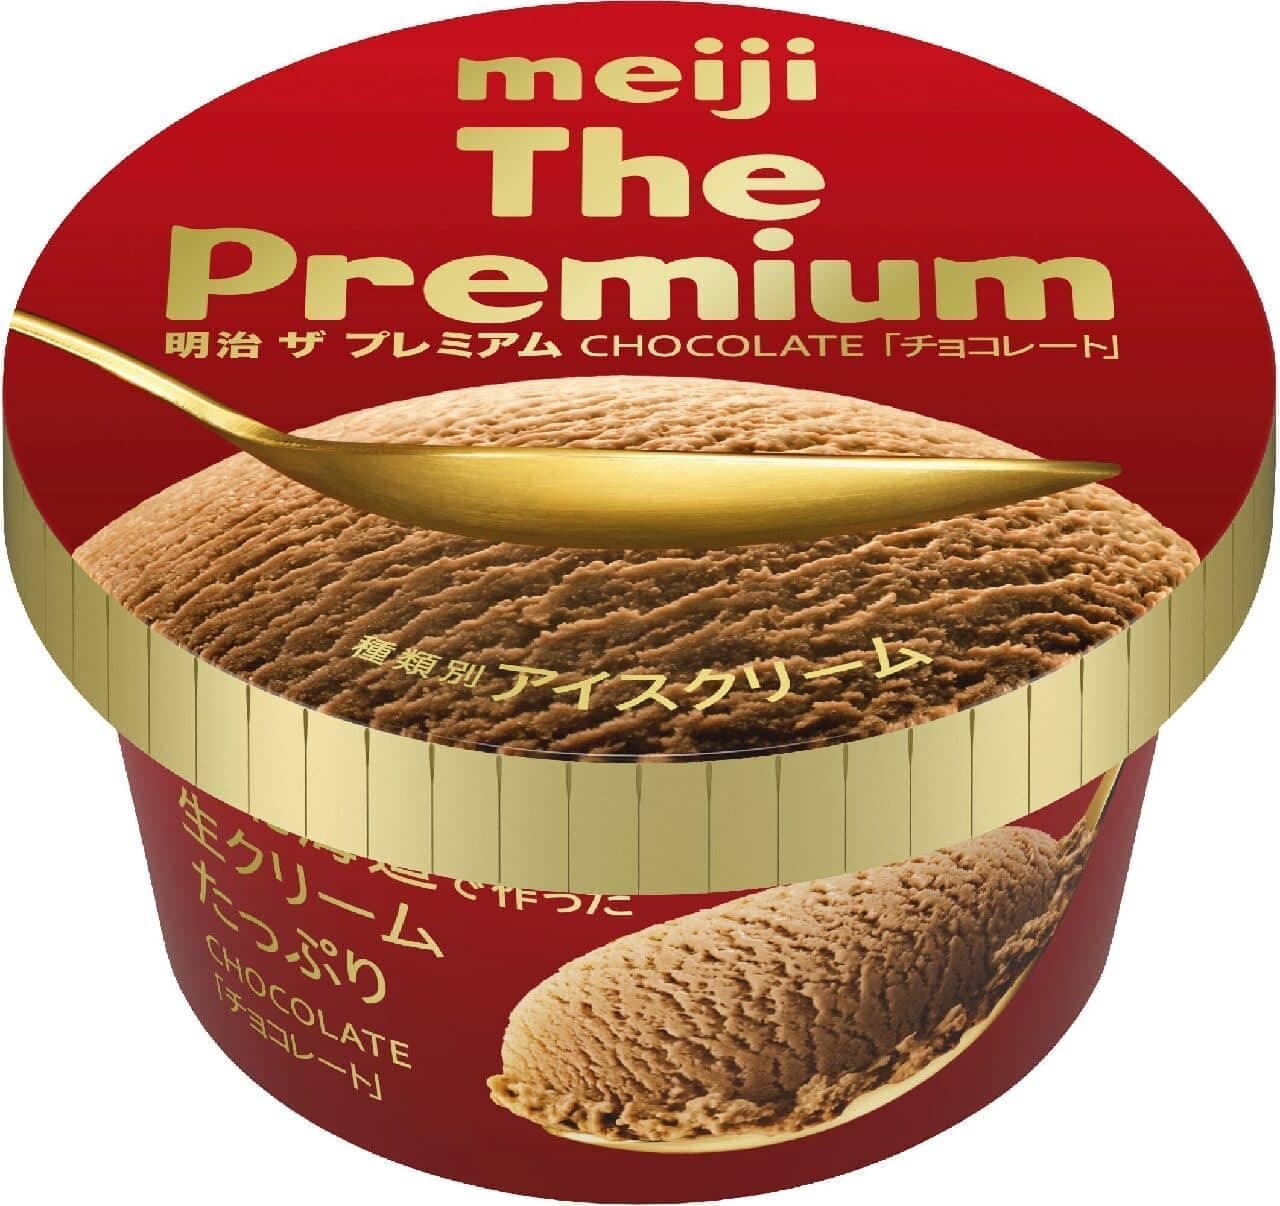 Meiji "Meiji The Premium Chocolate